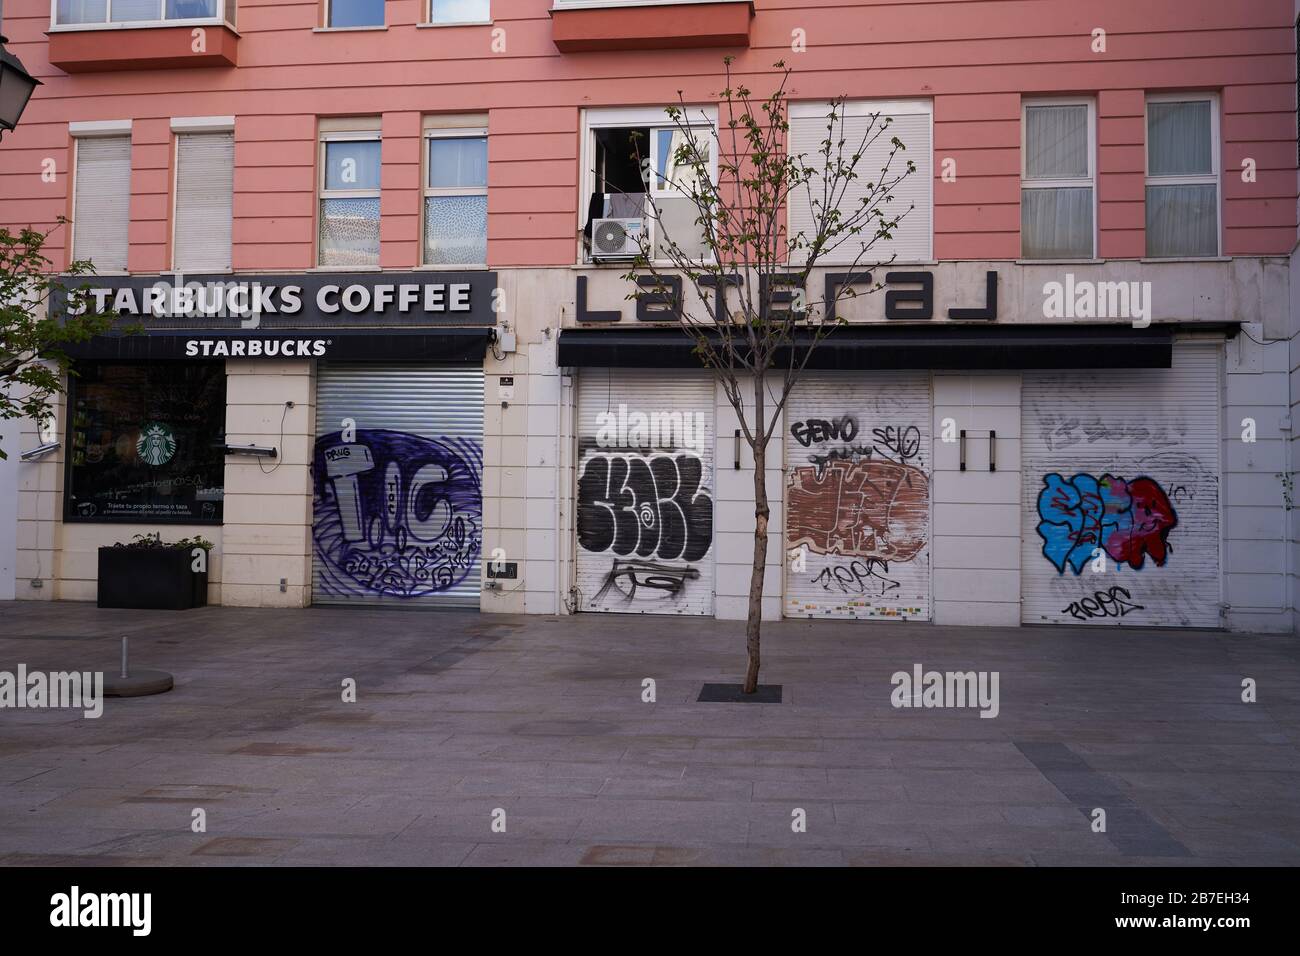 Café Starbucks et restaurant latéral à Madrid fermé en raison de l'état d'urgence et de verrouillage en Espagne lié au virus Corona (covid-19) Banque D'Images